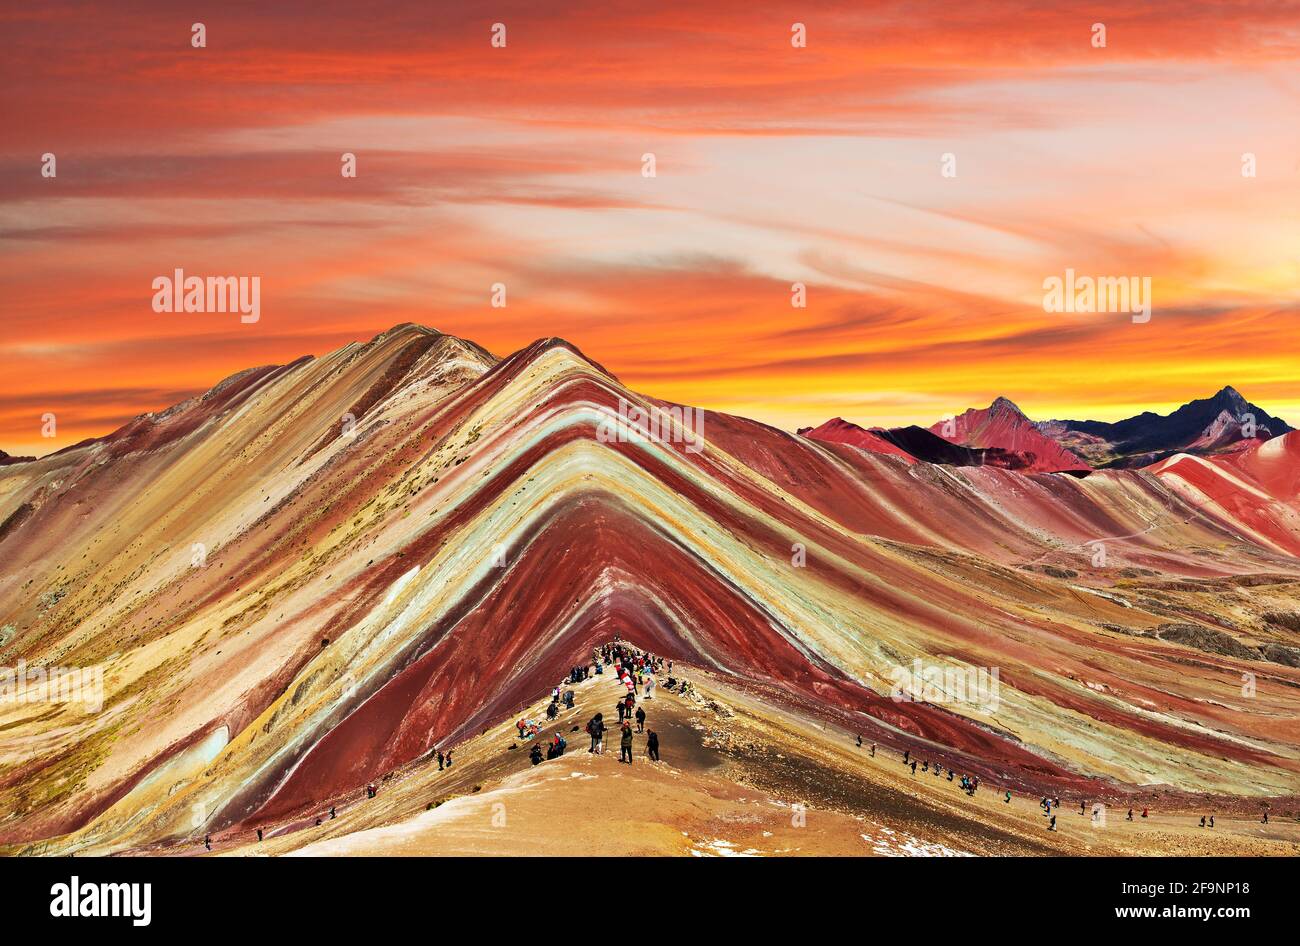 Rainbow Mountain oder Vinicunca Montana de Siete Colores mit schönem Abendhimmel bei Sonnenuntergang, Cuzco oder Cusco Region in Peru, peruanische Anden, PAN Stockfoto